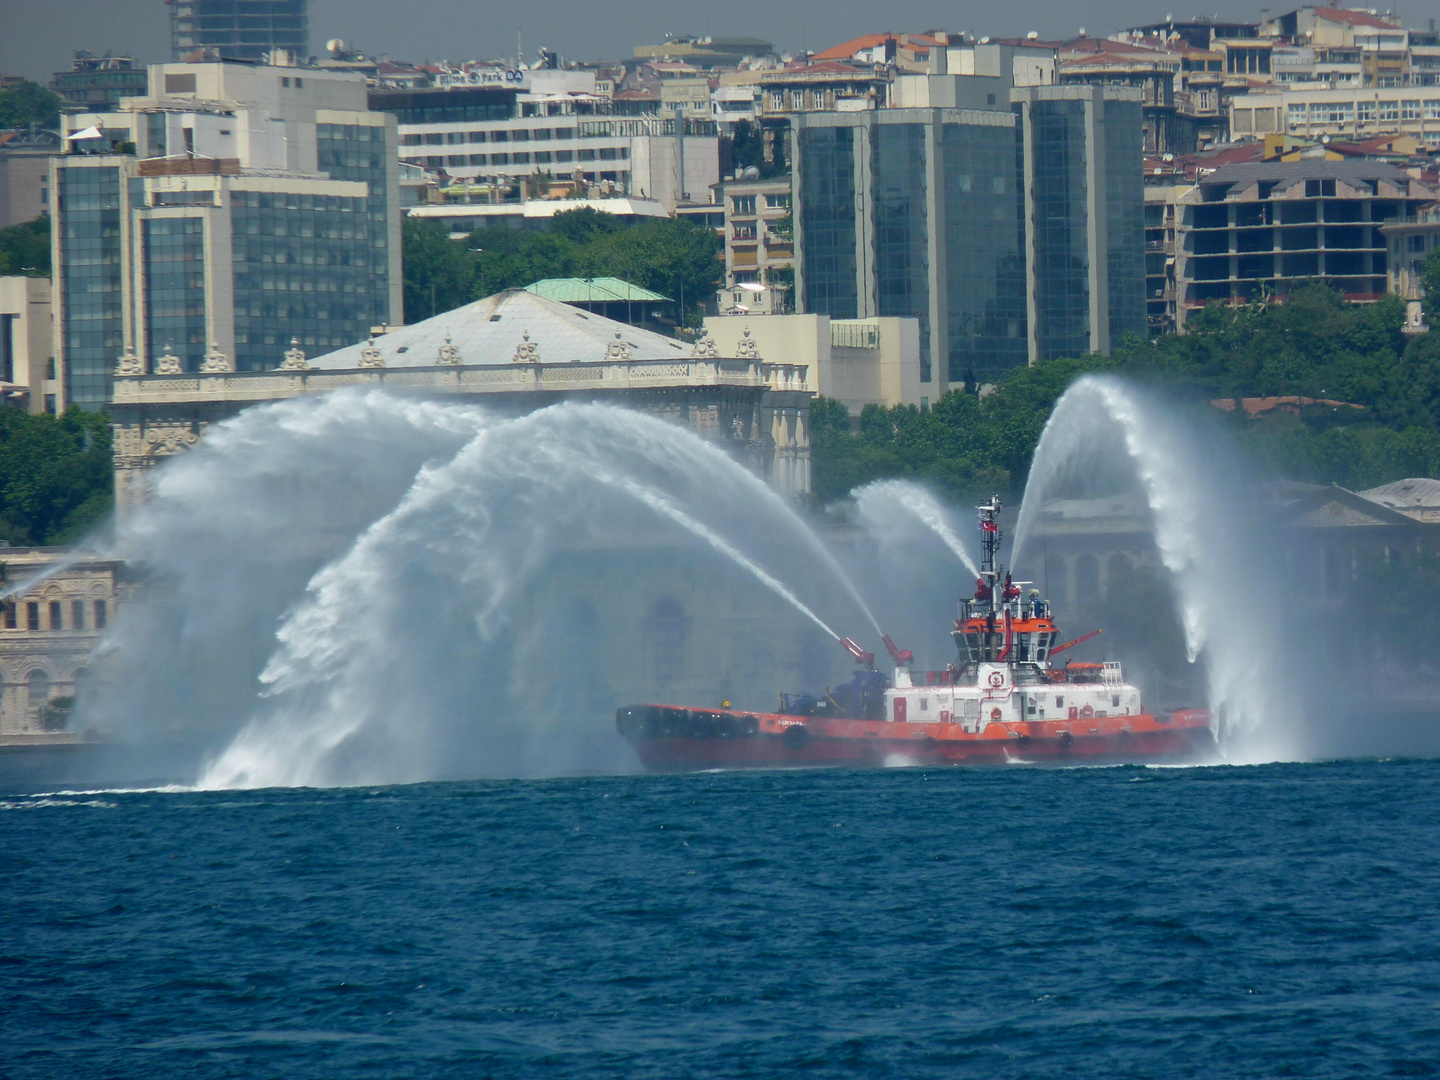 Fontänen auf dem Bosporus